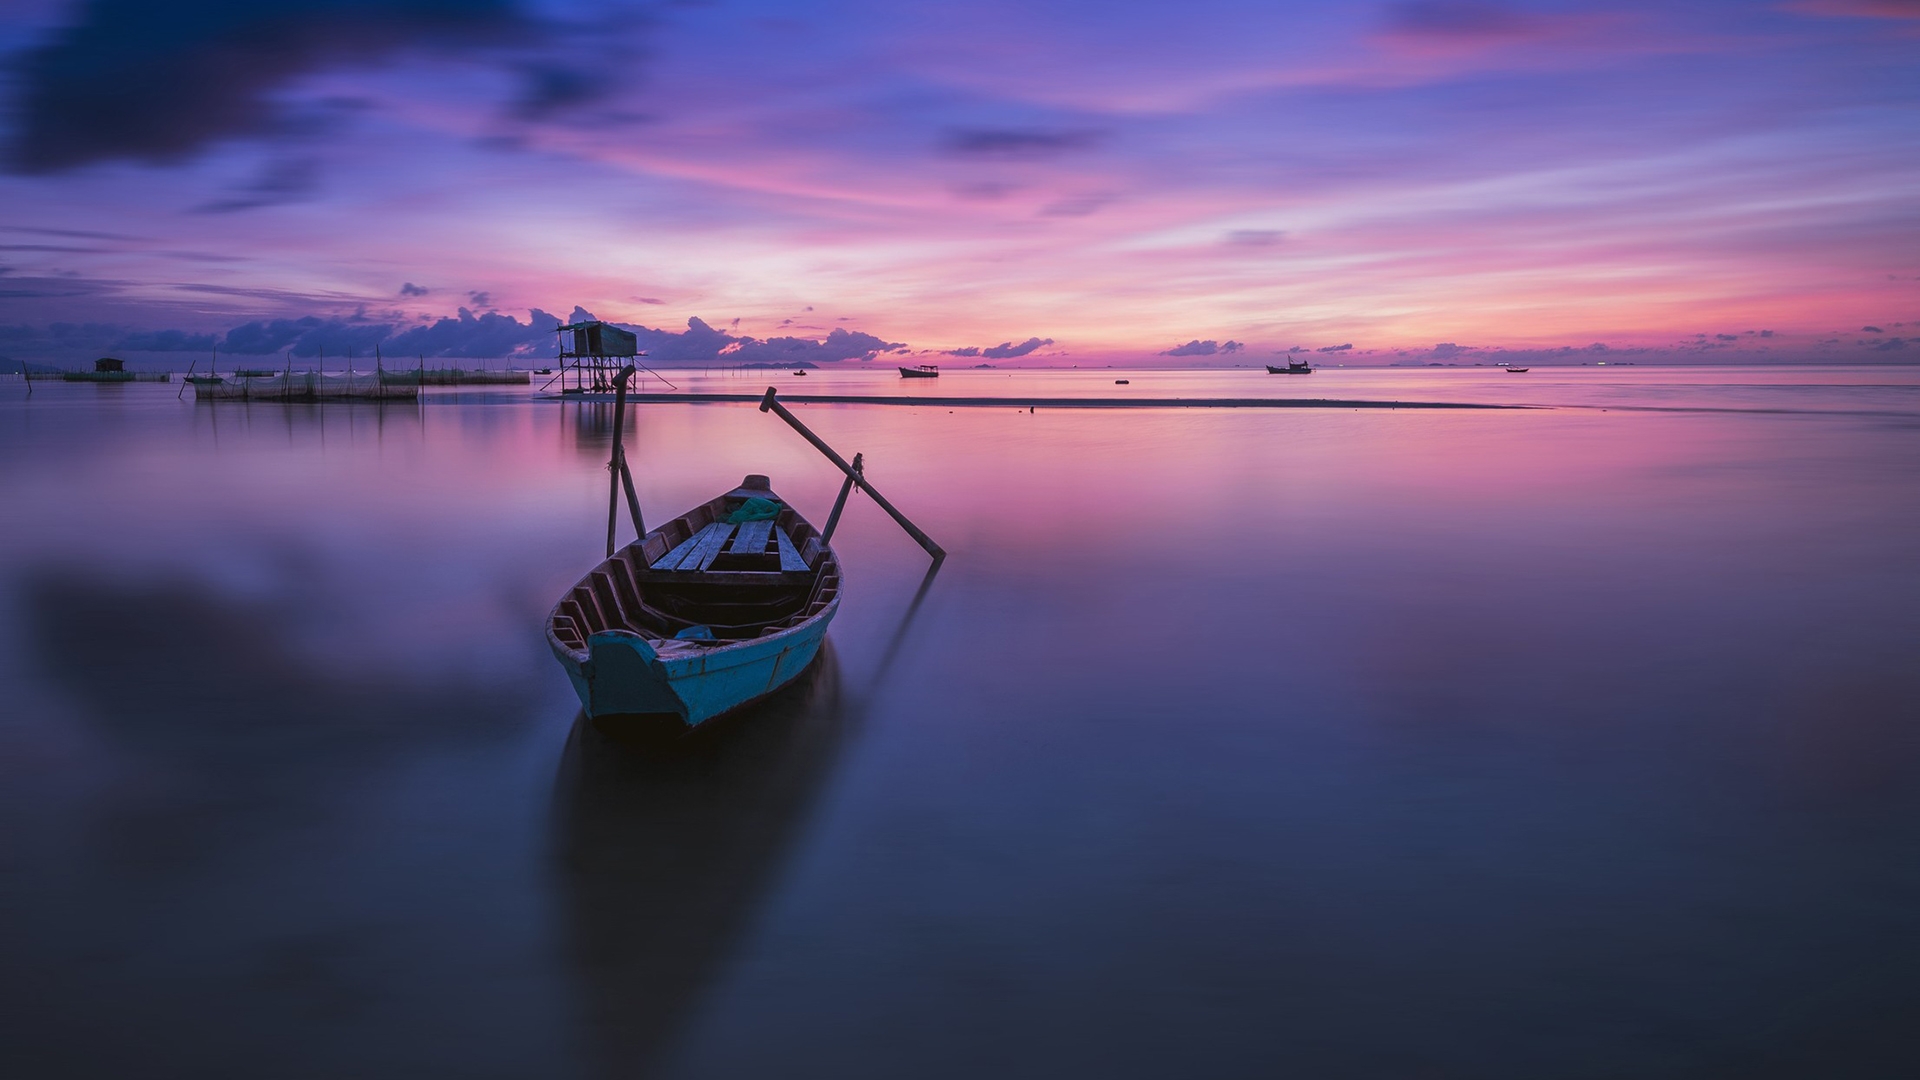 Бесплатное фото Припаркованная деревянная лодка с веслами на фоне красивого заката